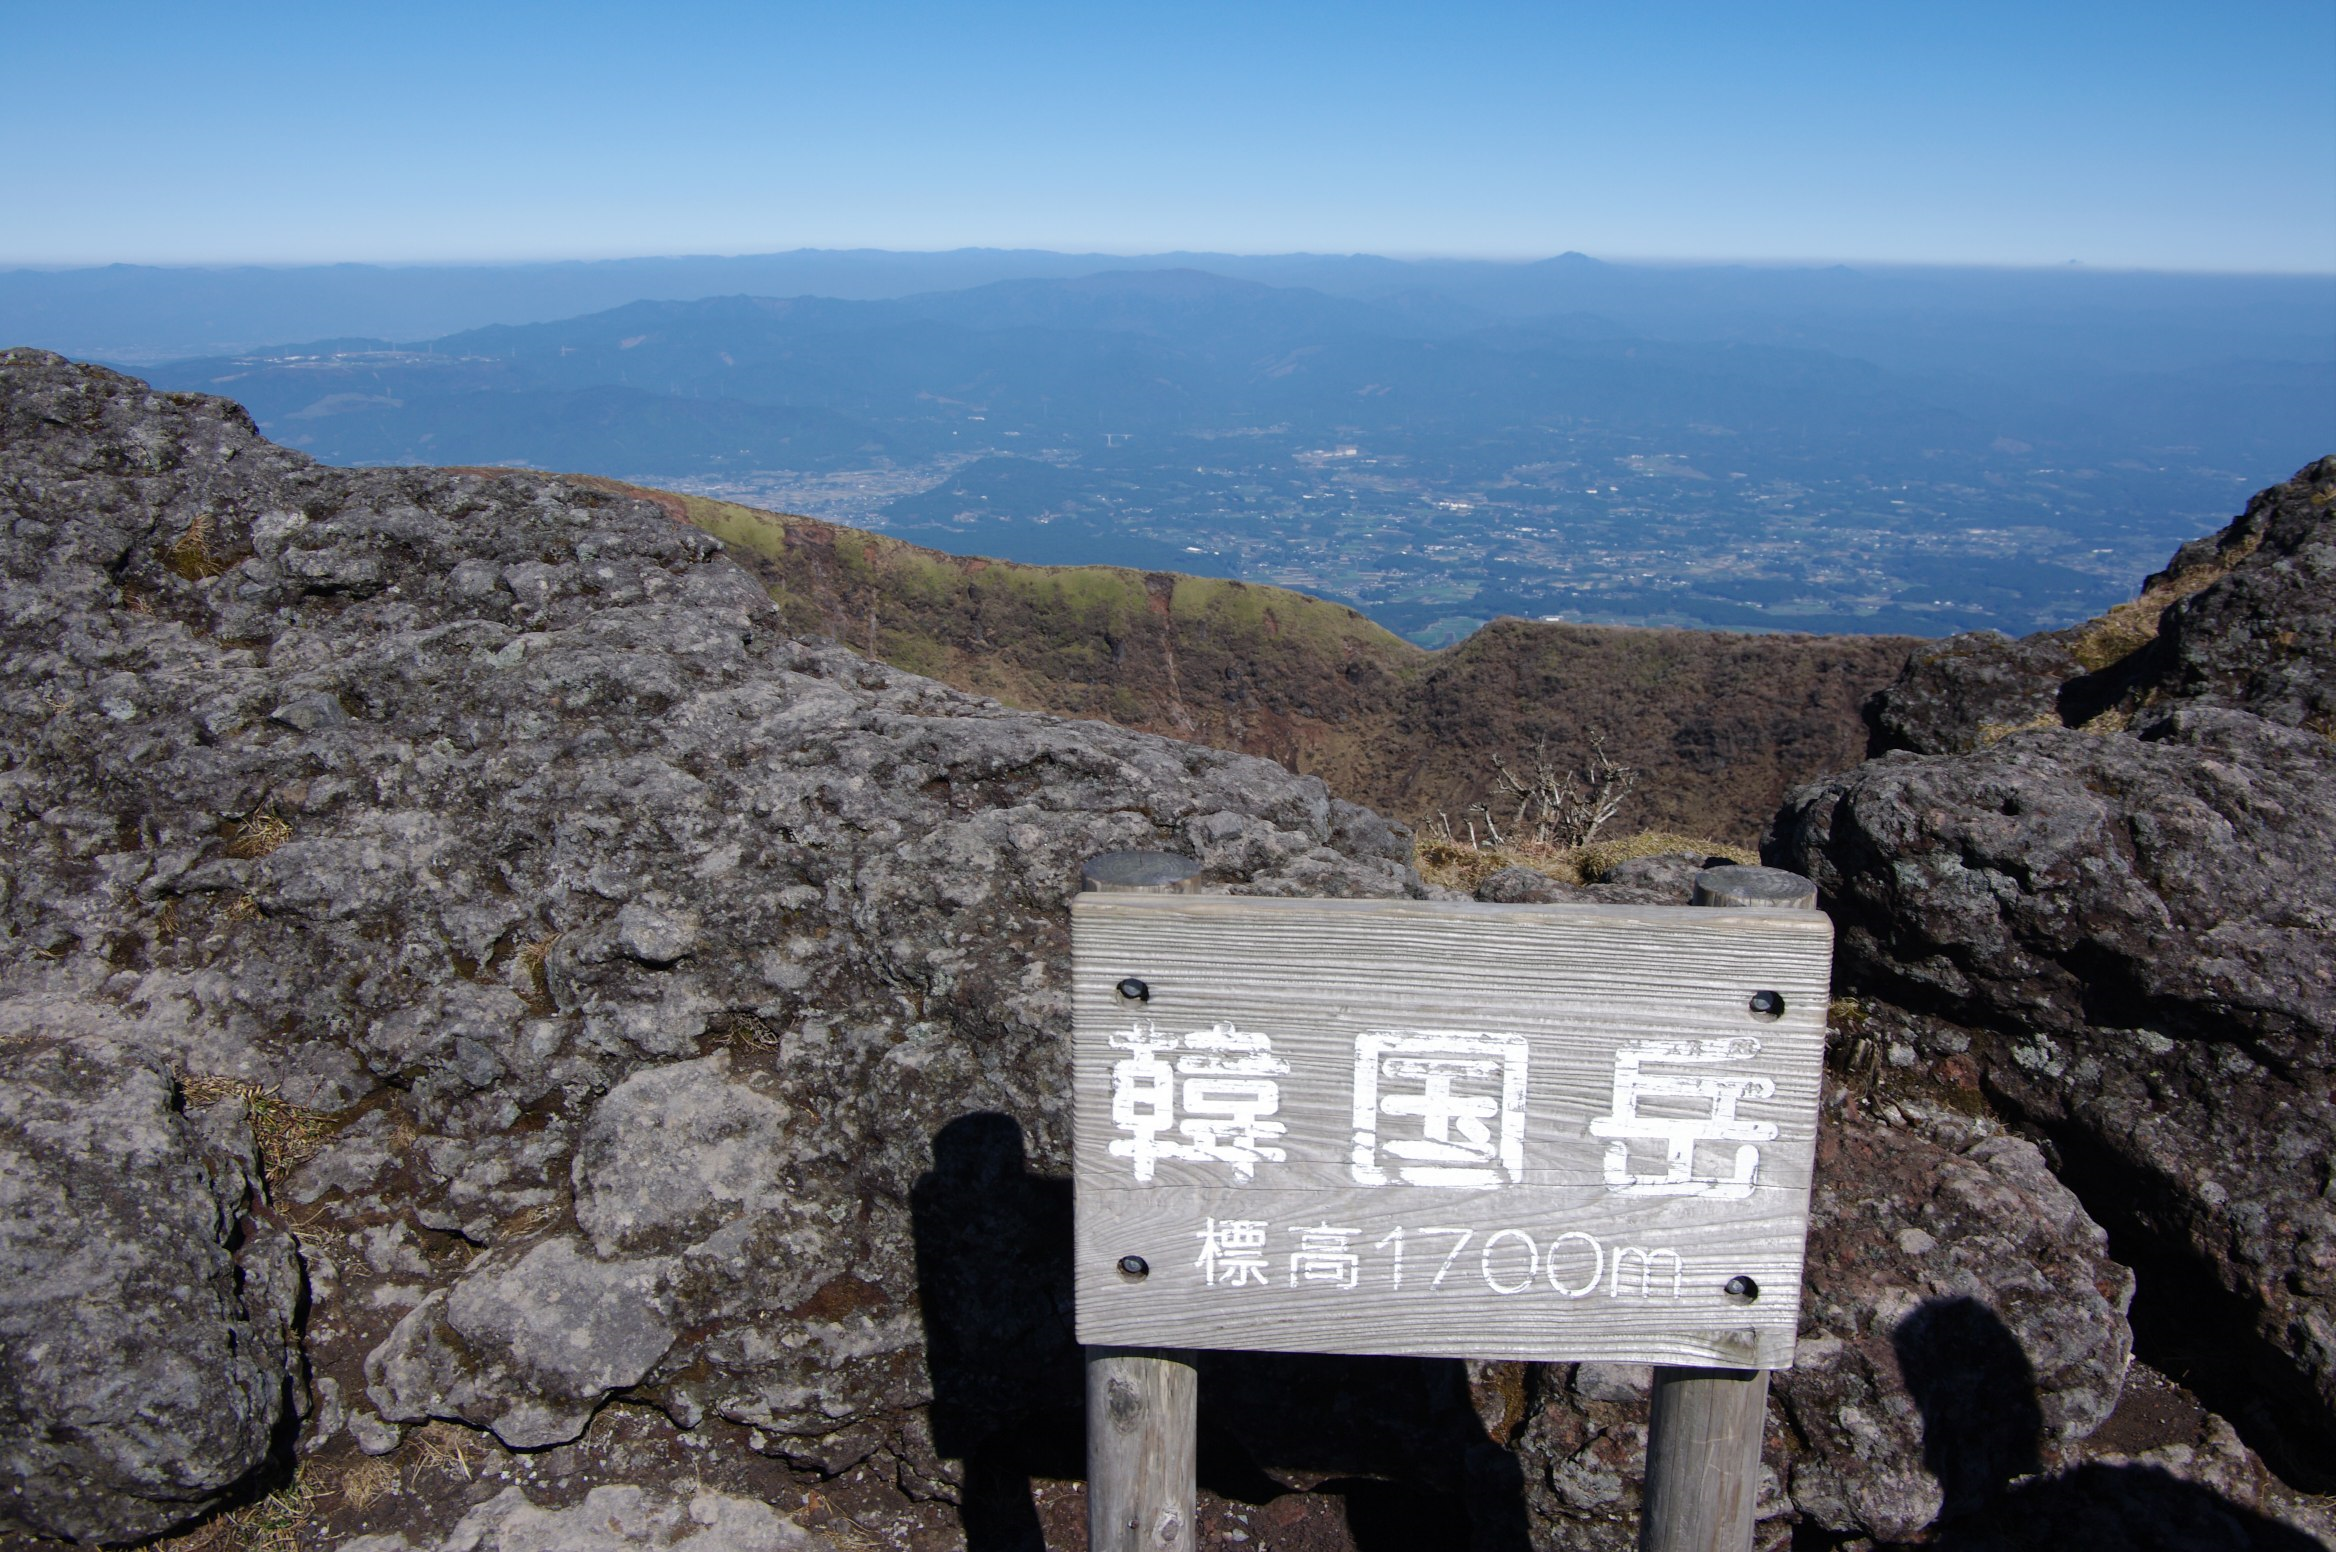 ‘한국악’이라고 쓴 표지판이 가라쿠니다케의 정상에 있다. 사진 출처: Tsuda의 작품. Flickr Creative License 이미지